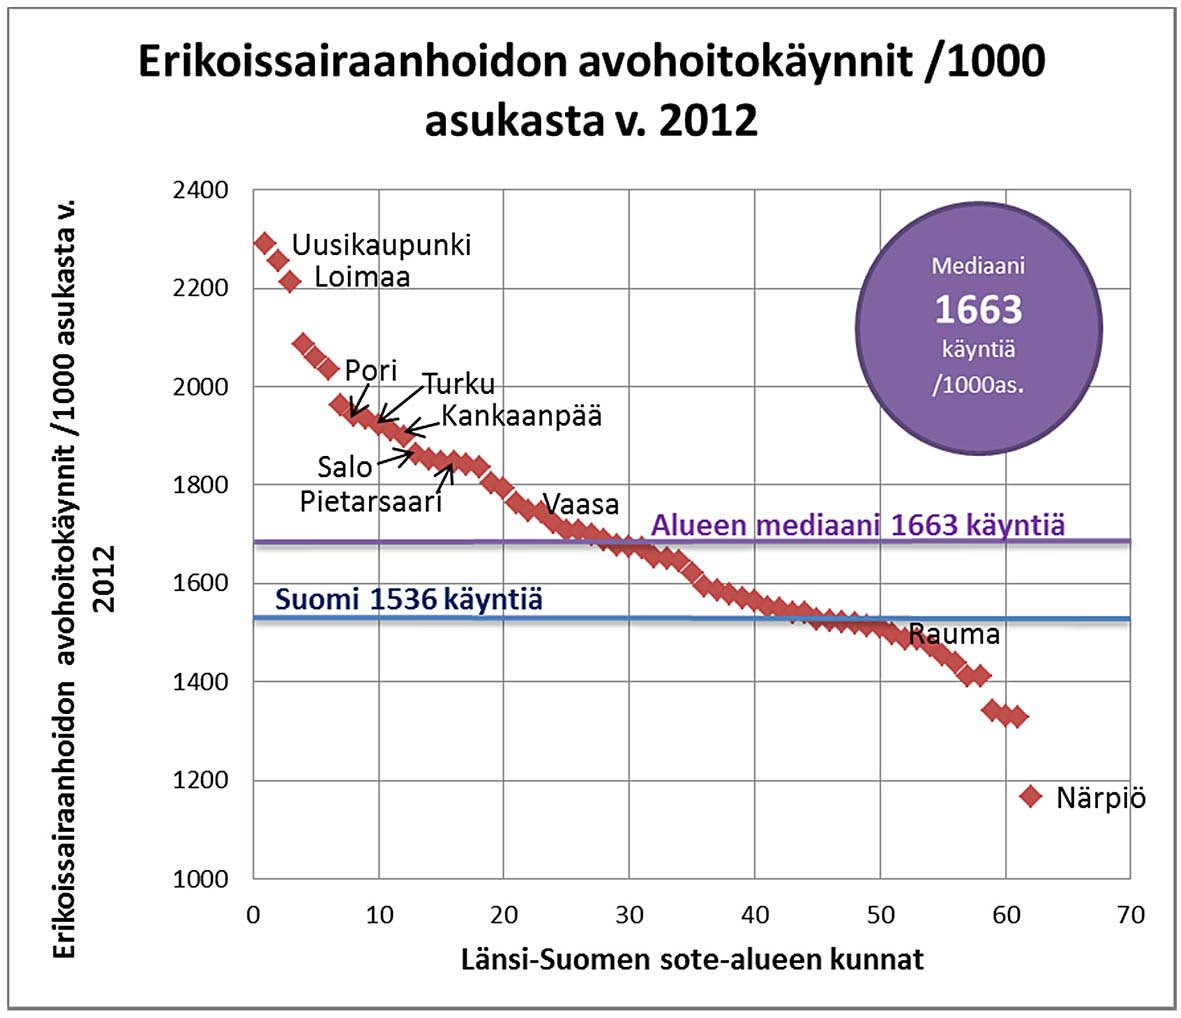 denhuollon avohoidon lääkärikäyntejä tehtiin Kankaanpäässä (2513) ja vähiten Vaasassa (584): Vaasan käyntien määrä oli viisi kertaa alhaisempi kuin Kankaanpäässä, joka osoittaa mittarin